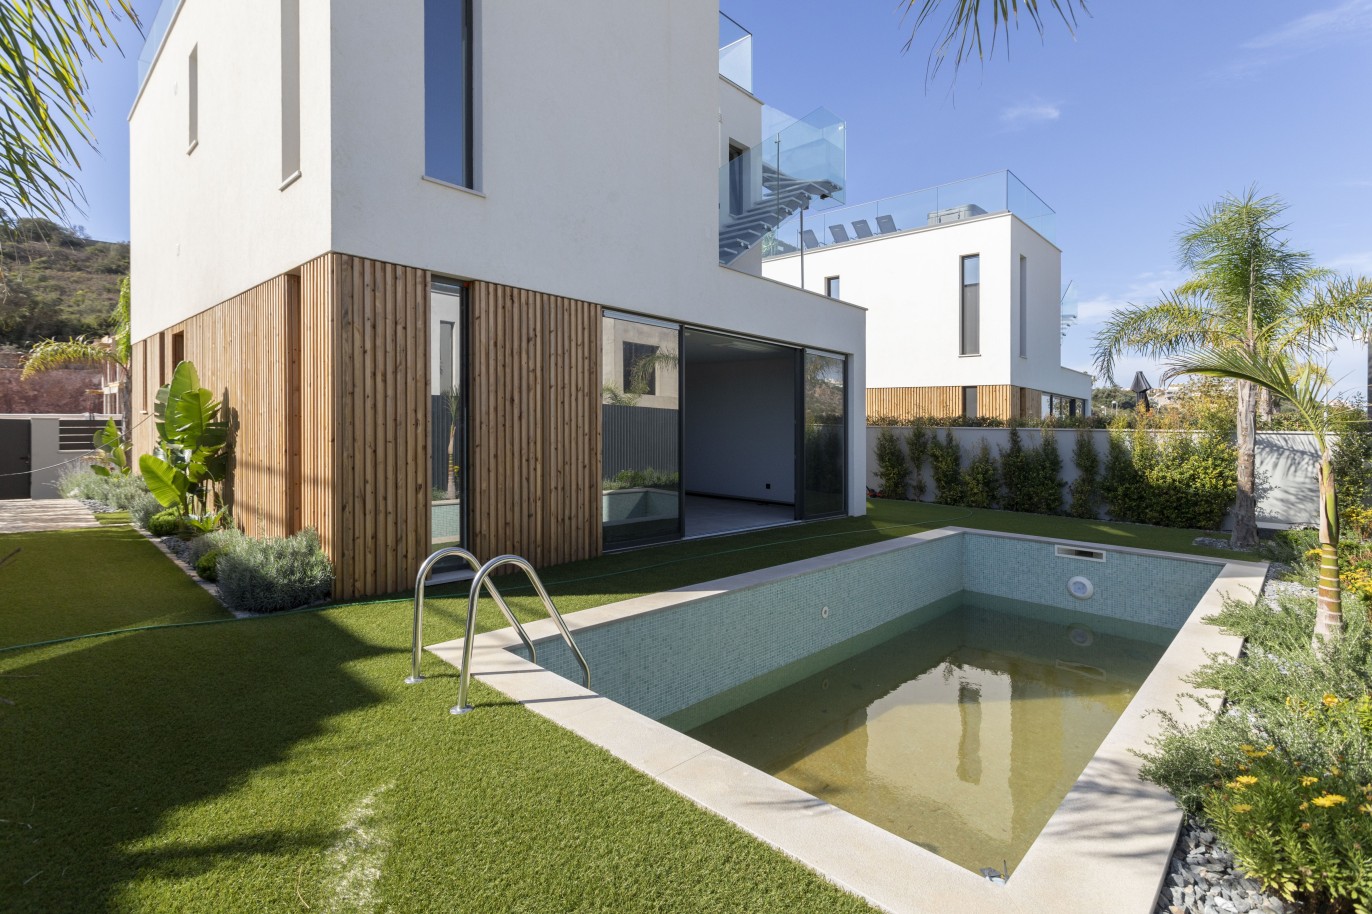 Villa de 3 dormitorios, en construcción, en venta, en Albufeira, Algarve_240636